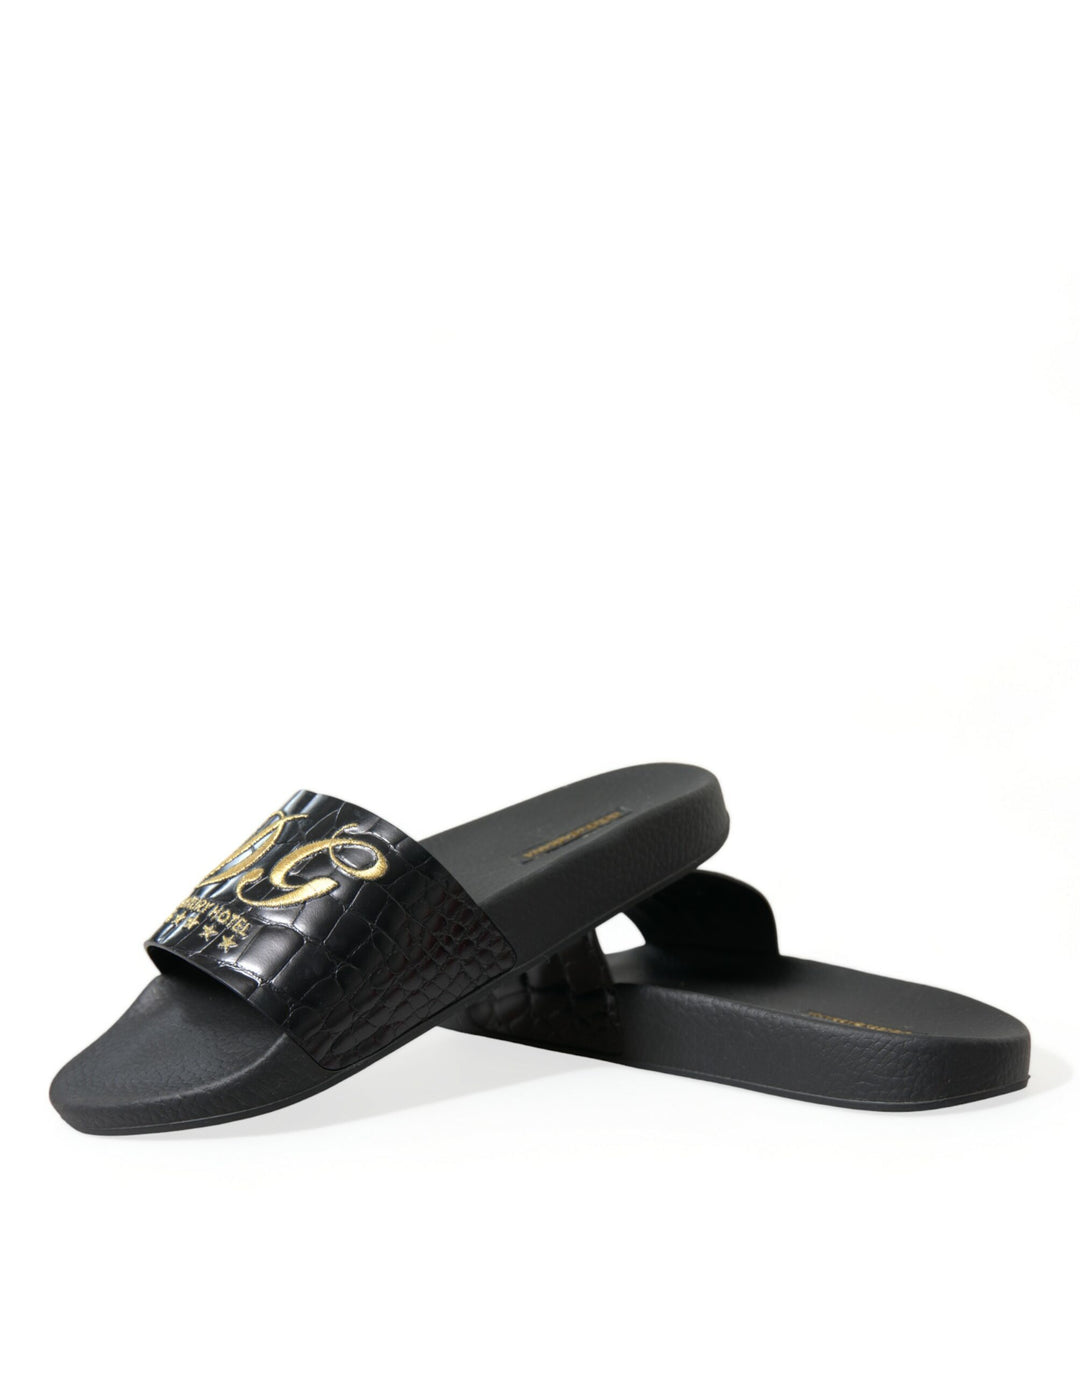 Dolce & Gabbana Elegant Black and Gold Leather Slides